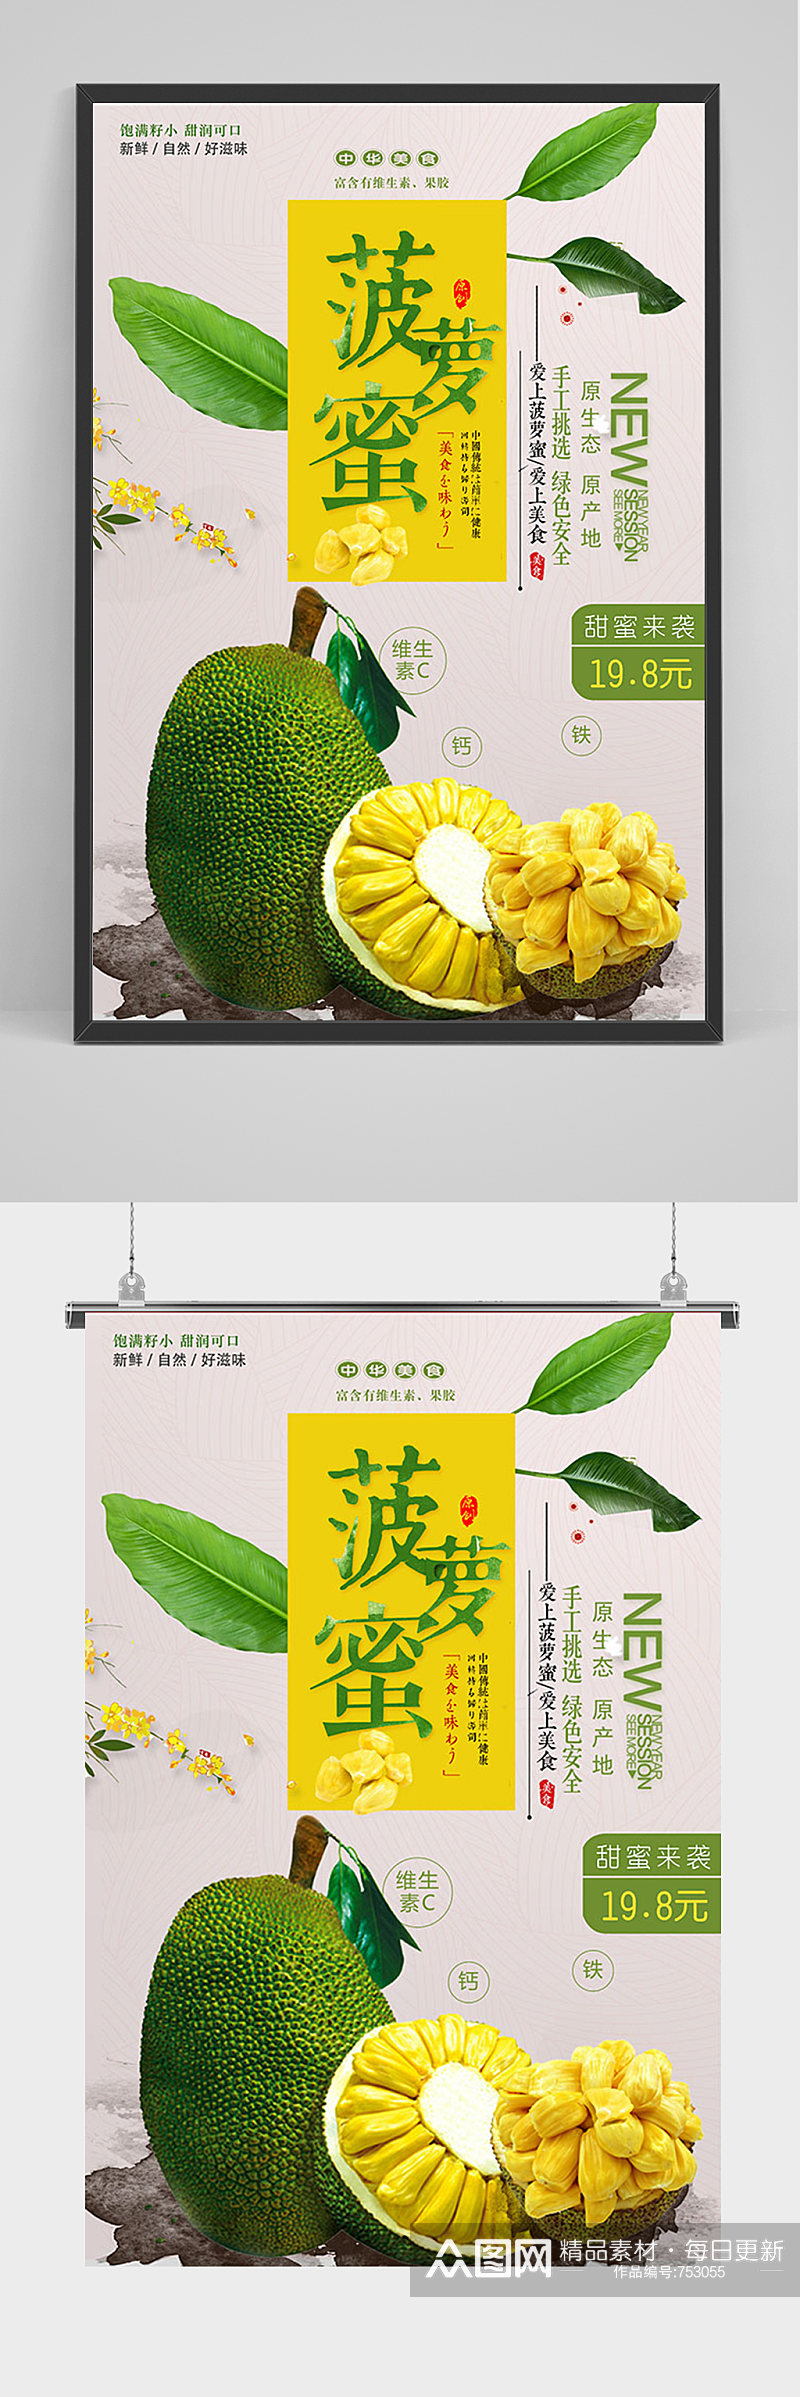 菠萝蜜美食宣传促销海报素材